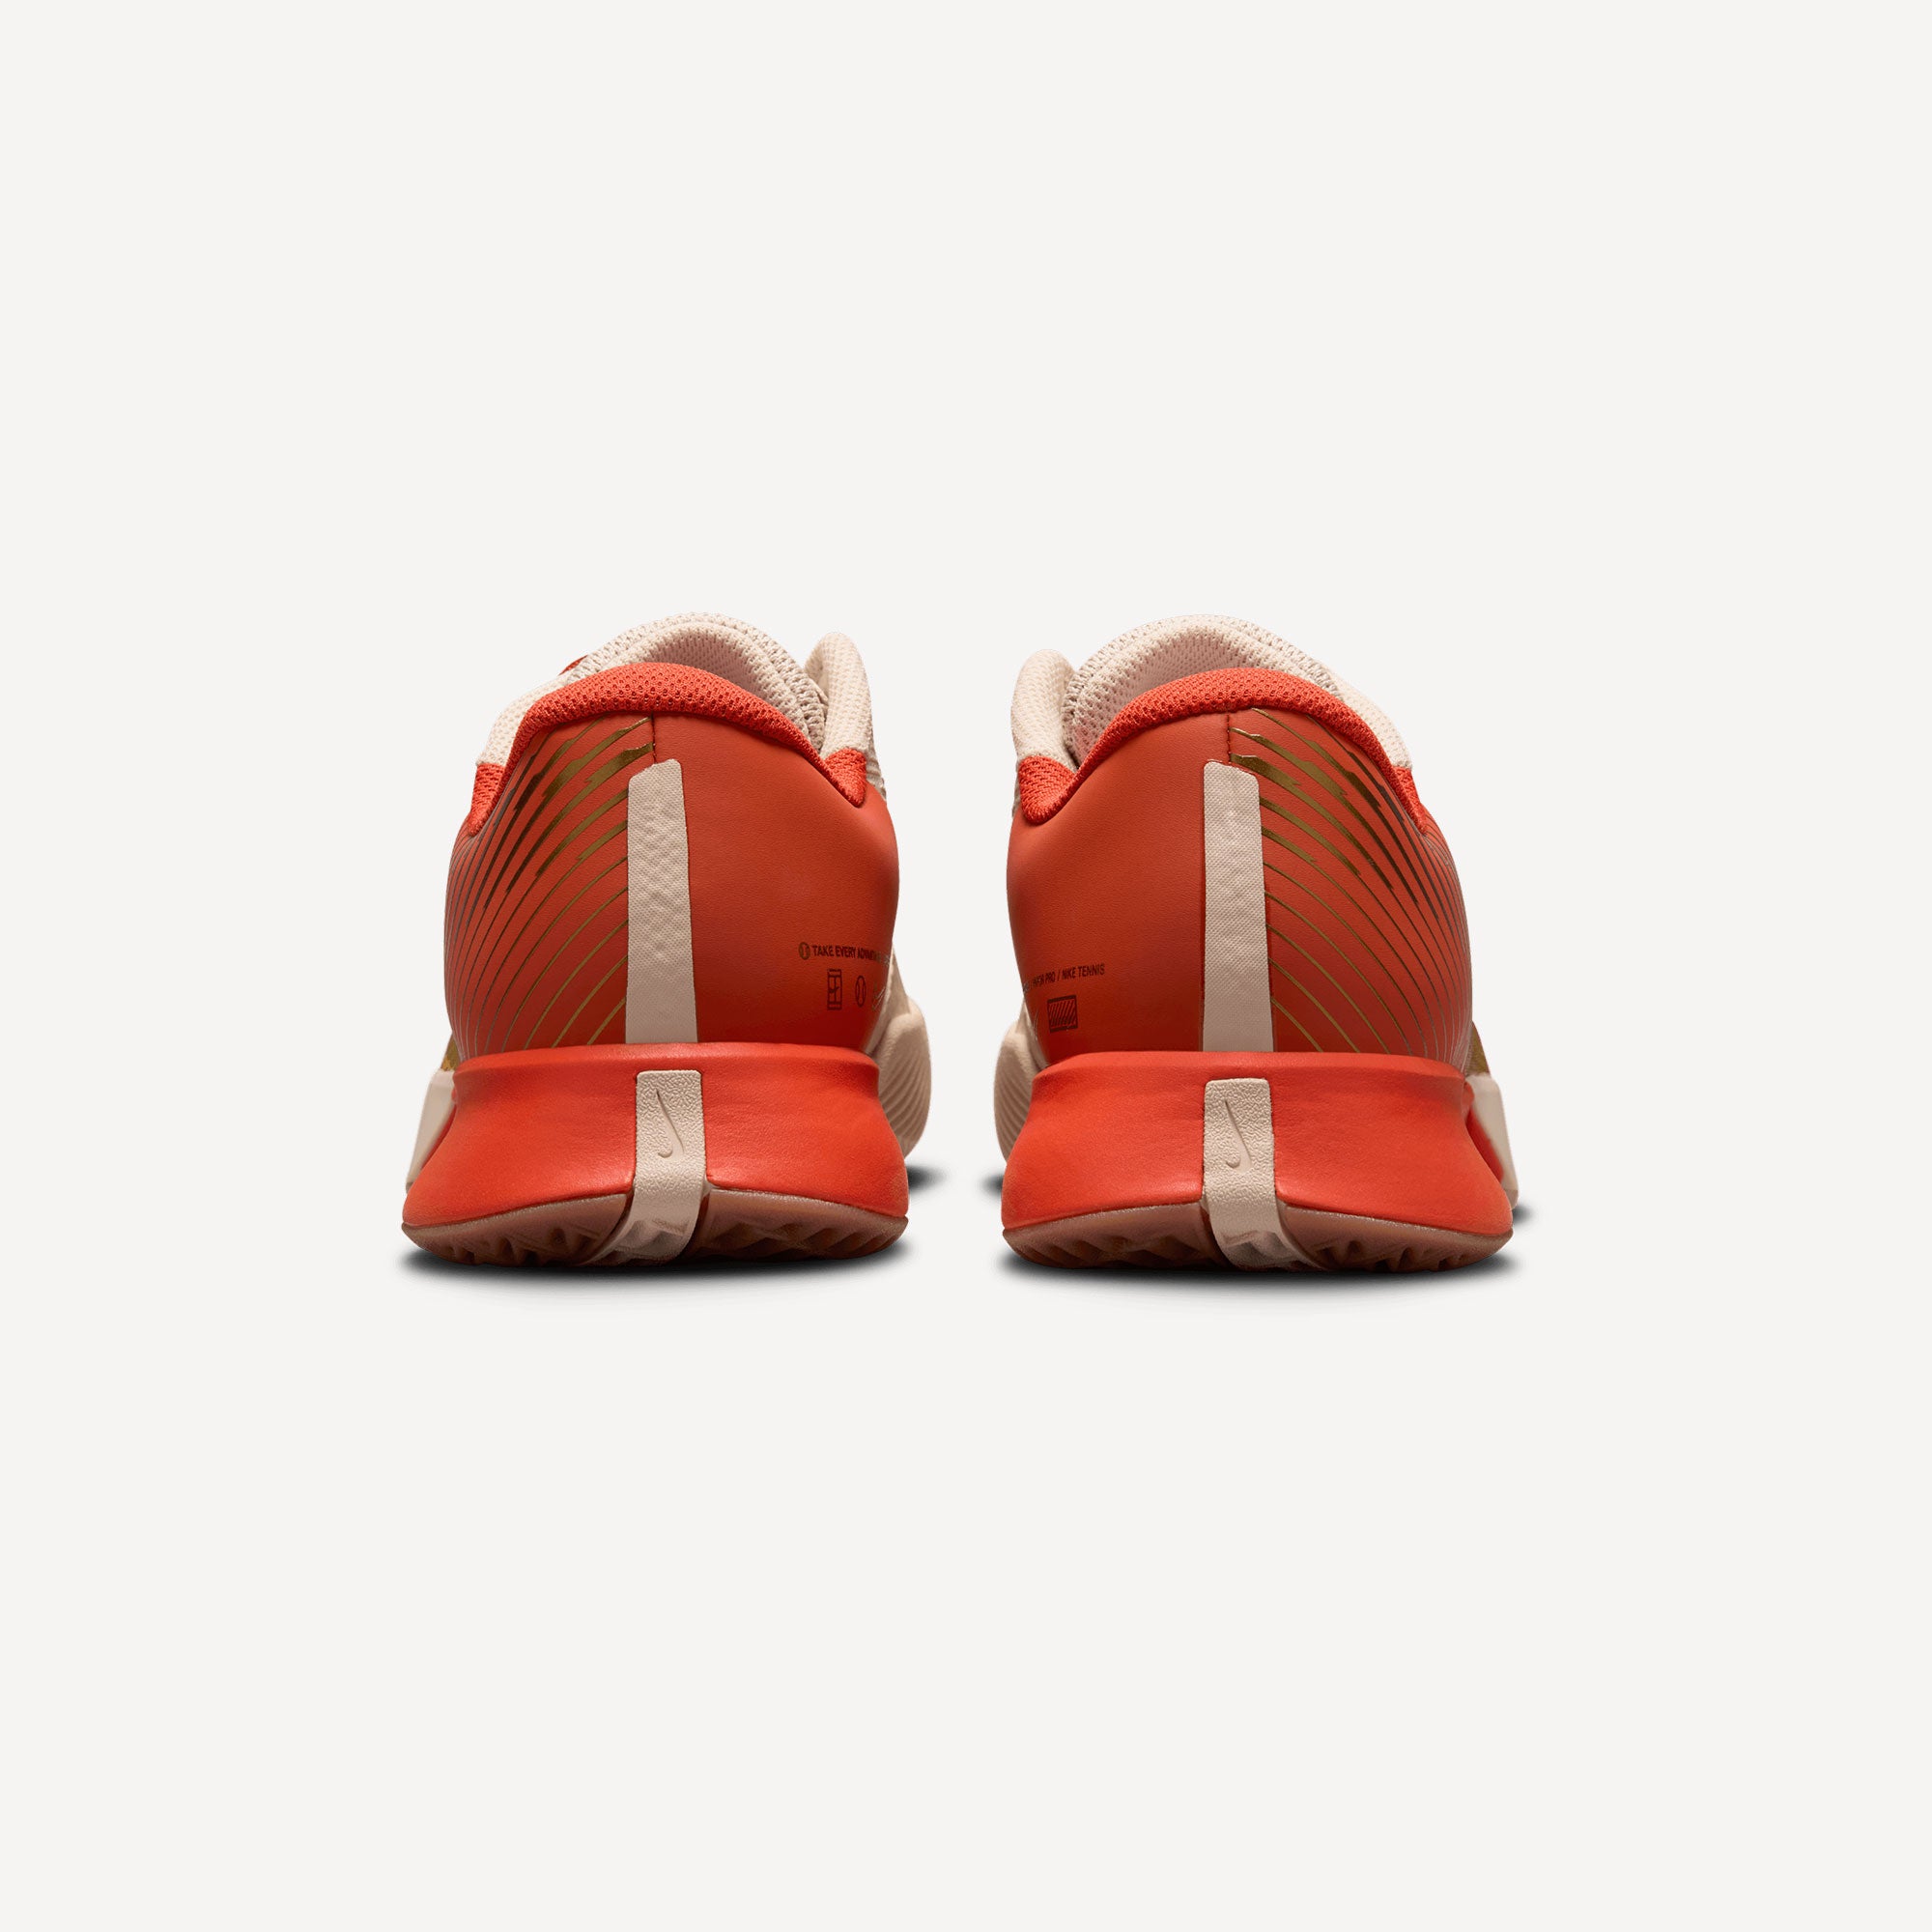 NikeCourt Air Zoom Vapor Pro 2 Premium Women's Clay Court Tennis Shoes - Sand (5)